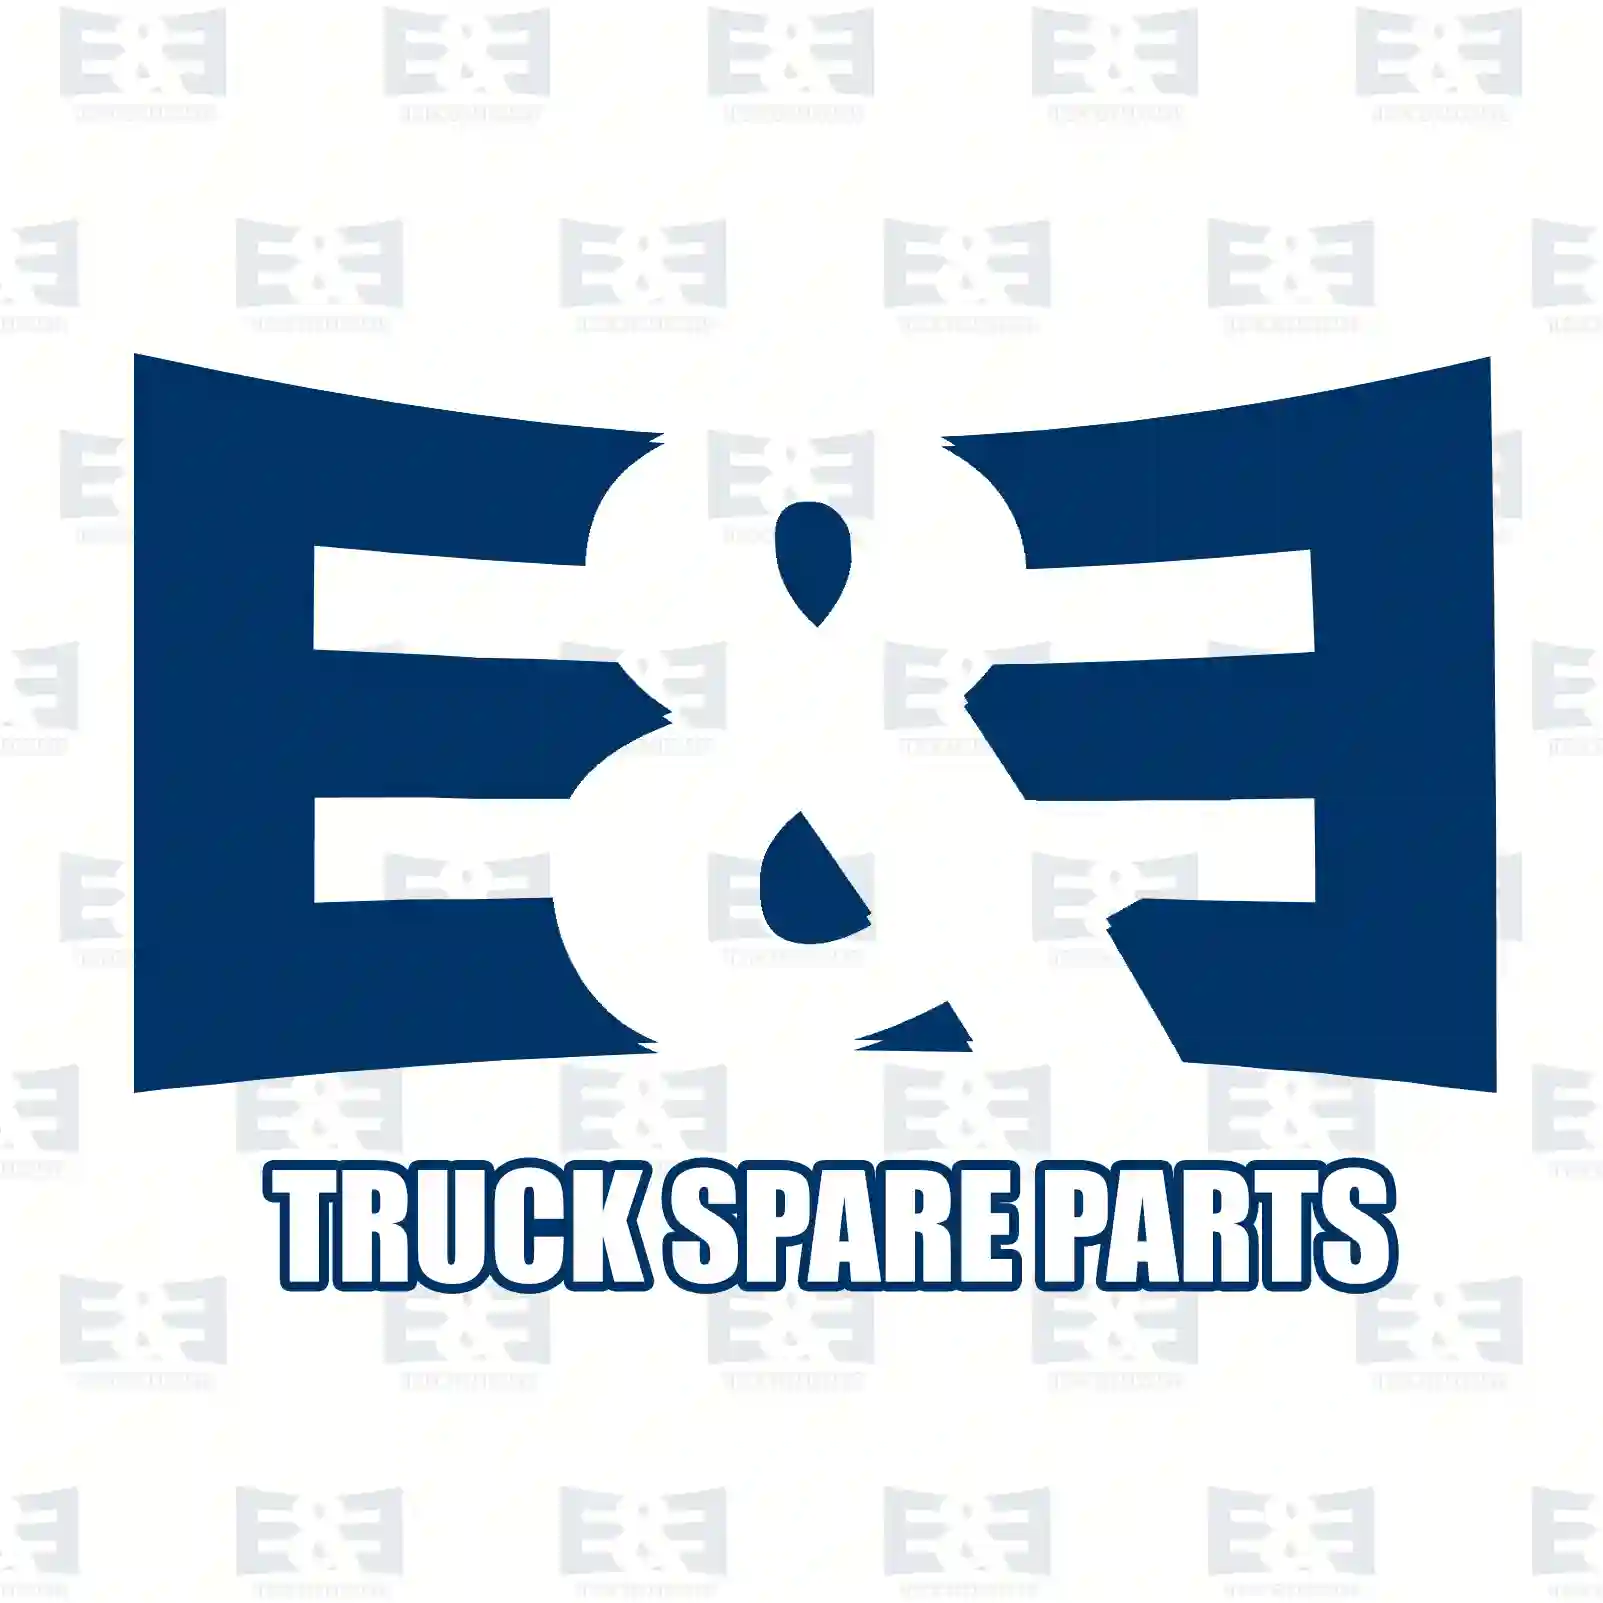 Tail lamp, 2E2299884, 1209348, 1284214, 1626320, 81252256443, 81252256444, 81252256472, 81252256473, 81252286028, 81252286030, 81252286033, 81252256024, 1315734, 1327269, 1386270, ZG20995-0008 ||  2E2299884 E&E Truck Spare Parts | Truck Spare Parts, Auotomotive Spare Parts Tail lamp, 2E2299884, 1209348, 1284214, 1626320, 81252256443, 81252256444, 81252256472, 81252256473, 81252286028, 81252286030, 81252286033, 81252256024, 1315734, 1327269, 1386270, ZG20995-0008 ||  2E2299884 E&E Truck Spare Parts | Truck Spare Parts, Auotomotive Spare Parts